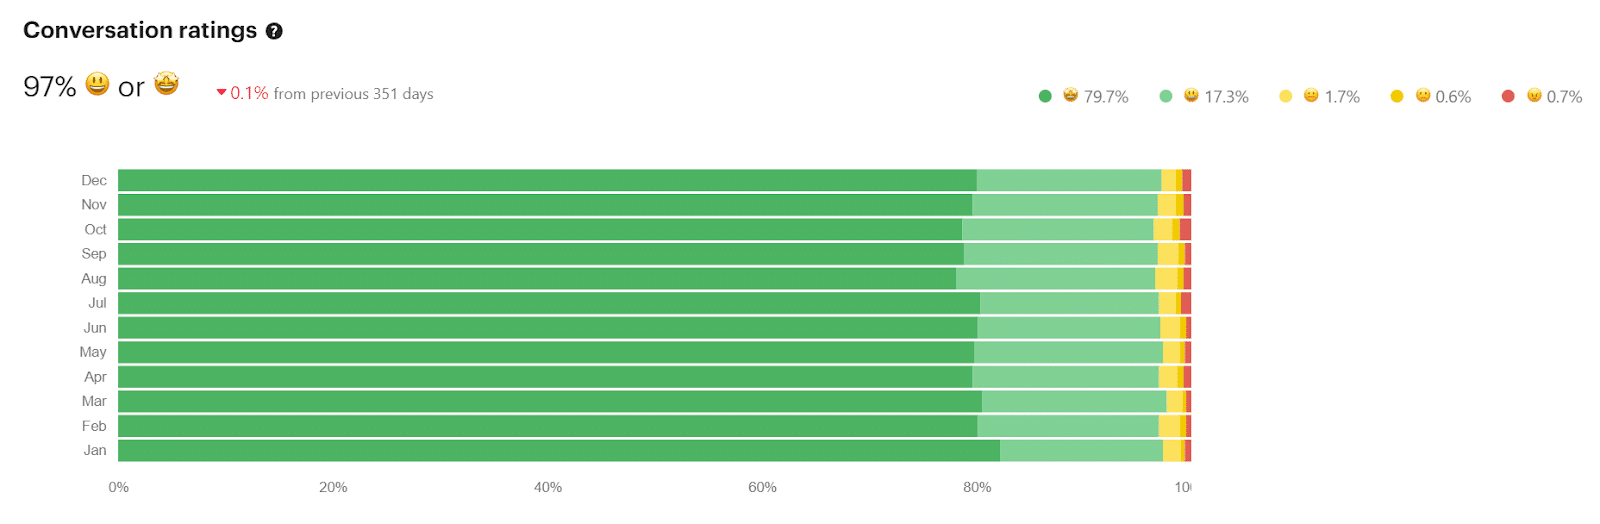 Ein grünes, horizontales Balkendiagramm zeigt die 97% Konversationsraten von Kinsta nach Monat im Jahr 2021.